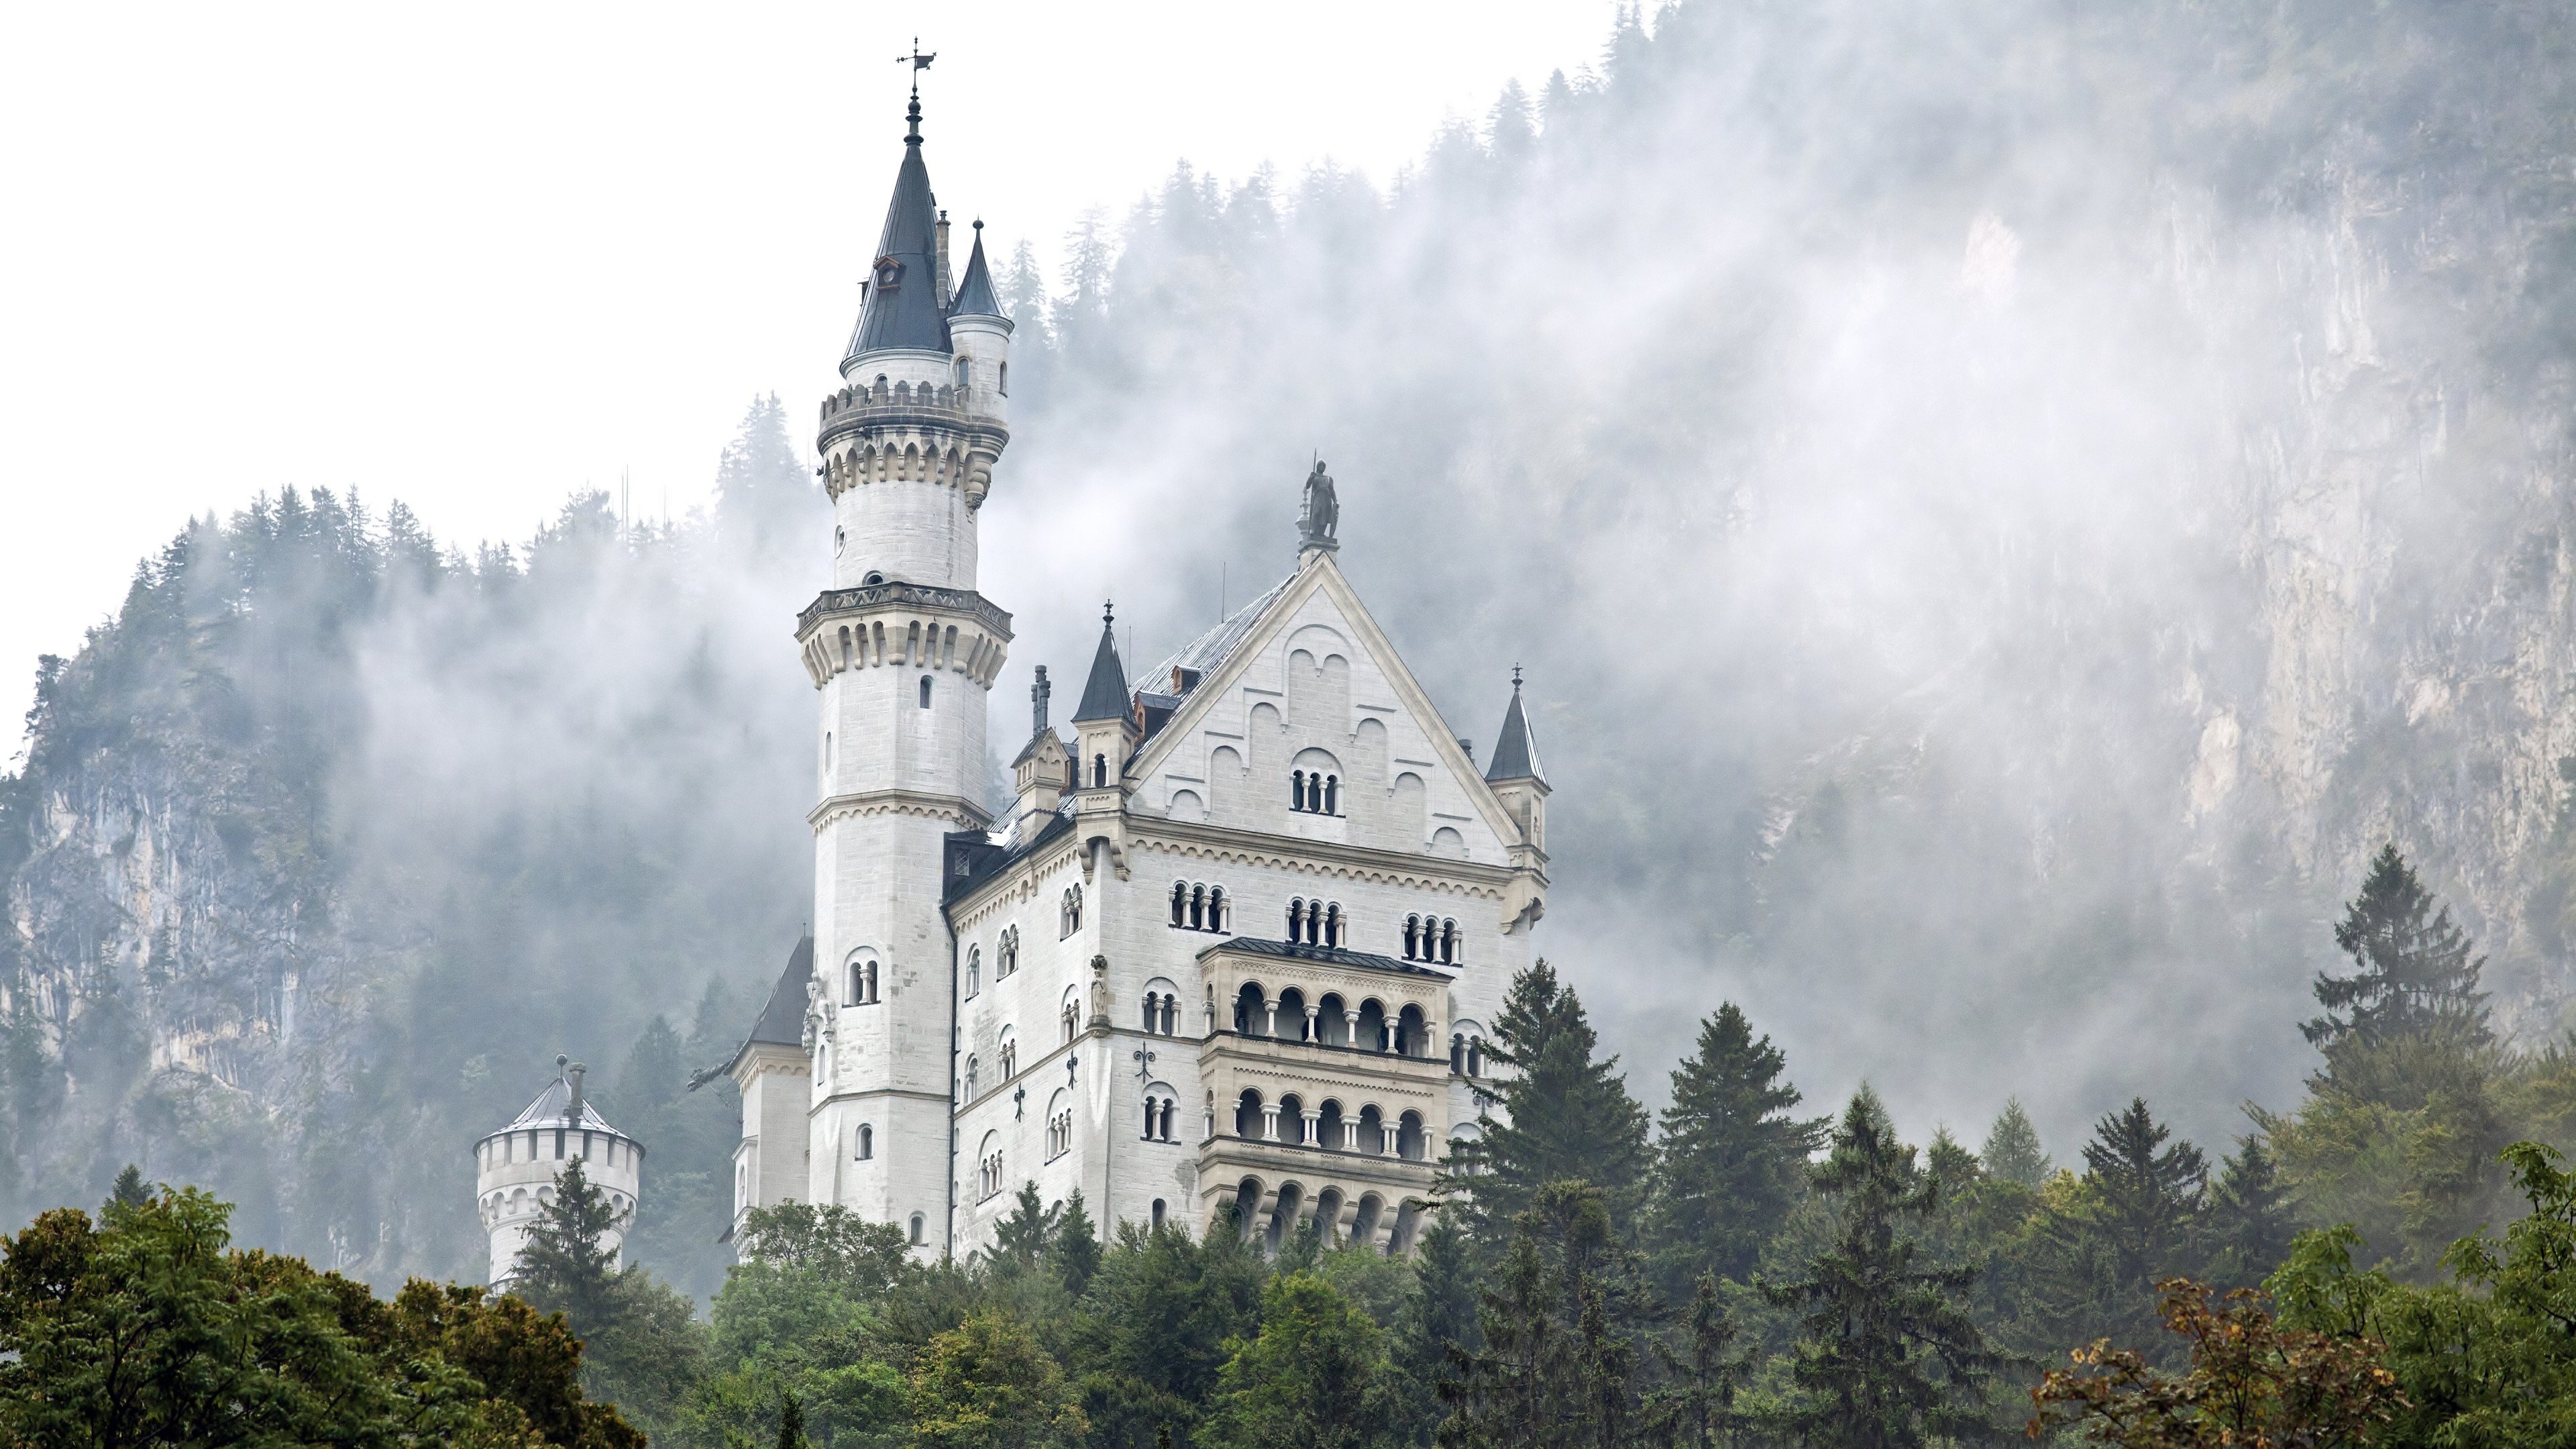 Download 4k Neuschwanstein Castle PC background ID:492669 for free